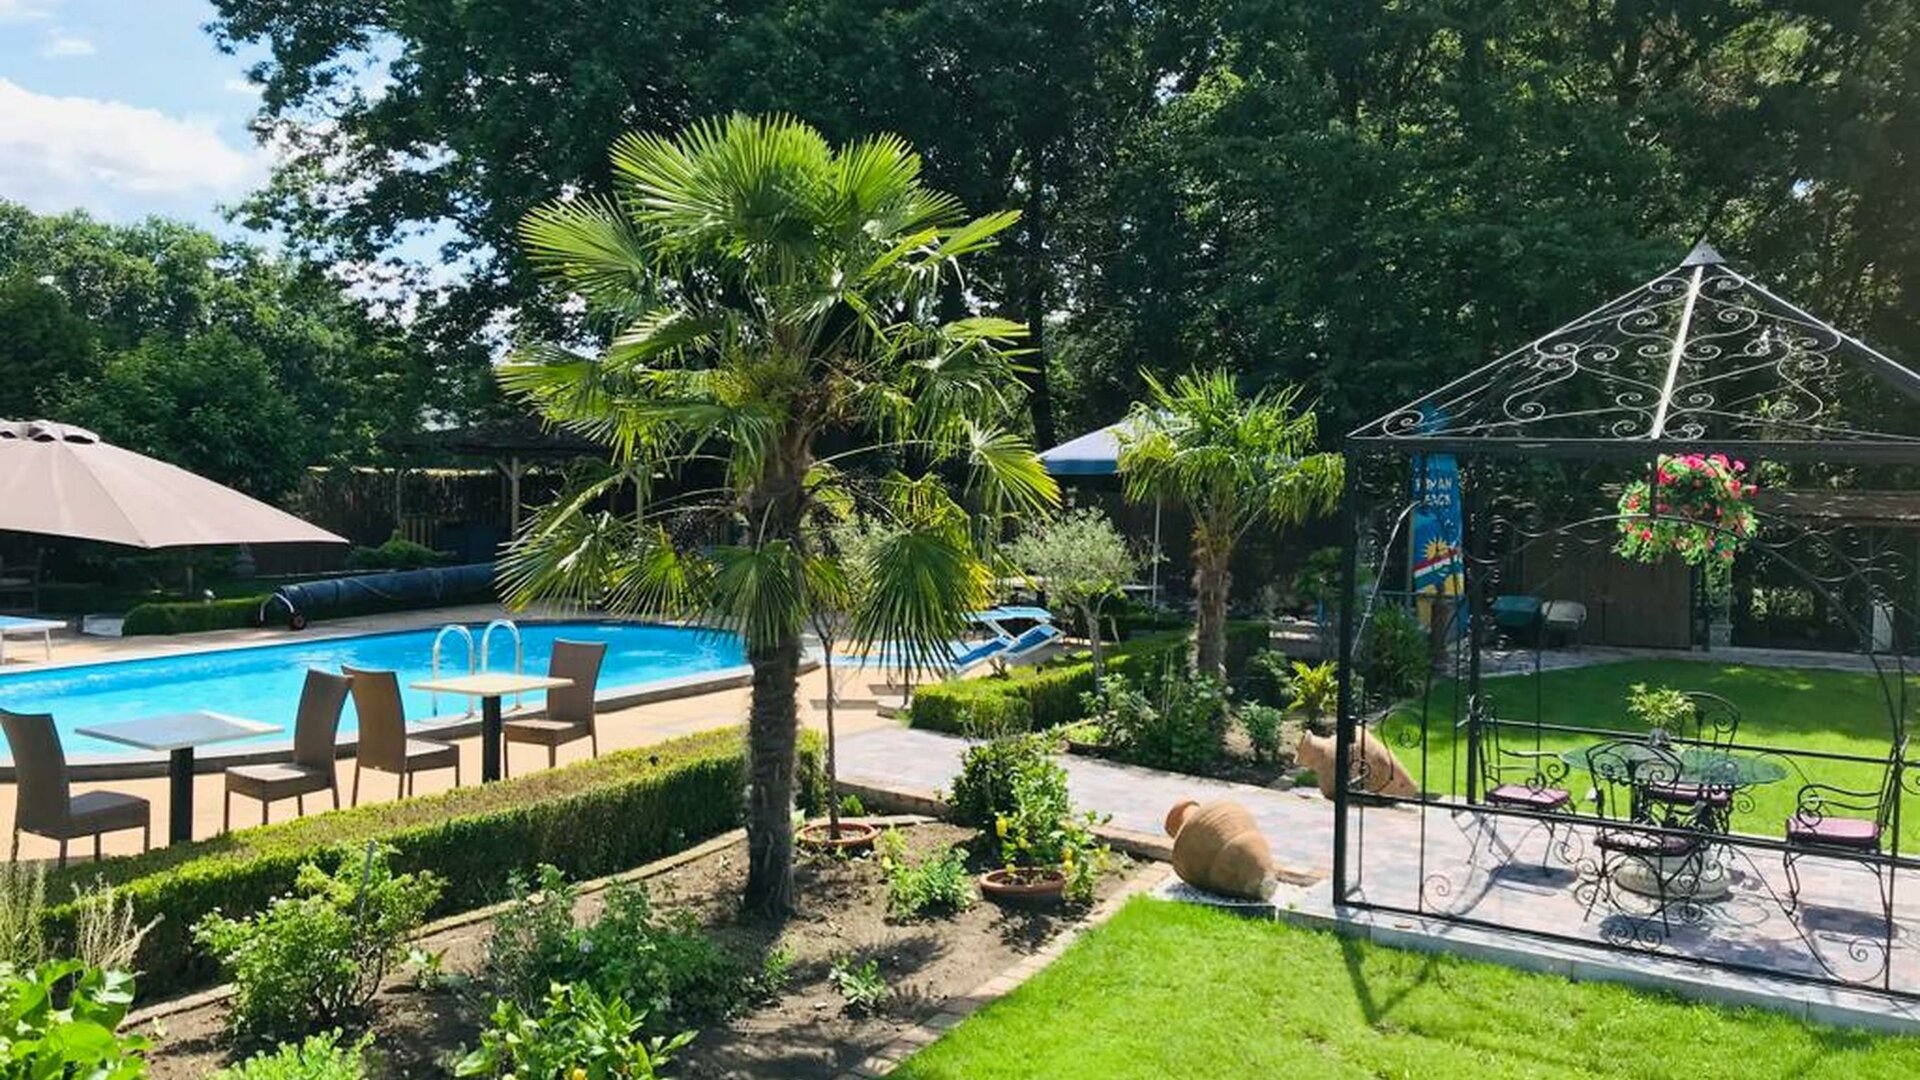 Casa Roman - Grote tuin met verwarmd zwembad (seizoensgebonden)